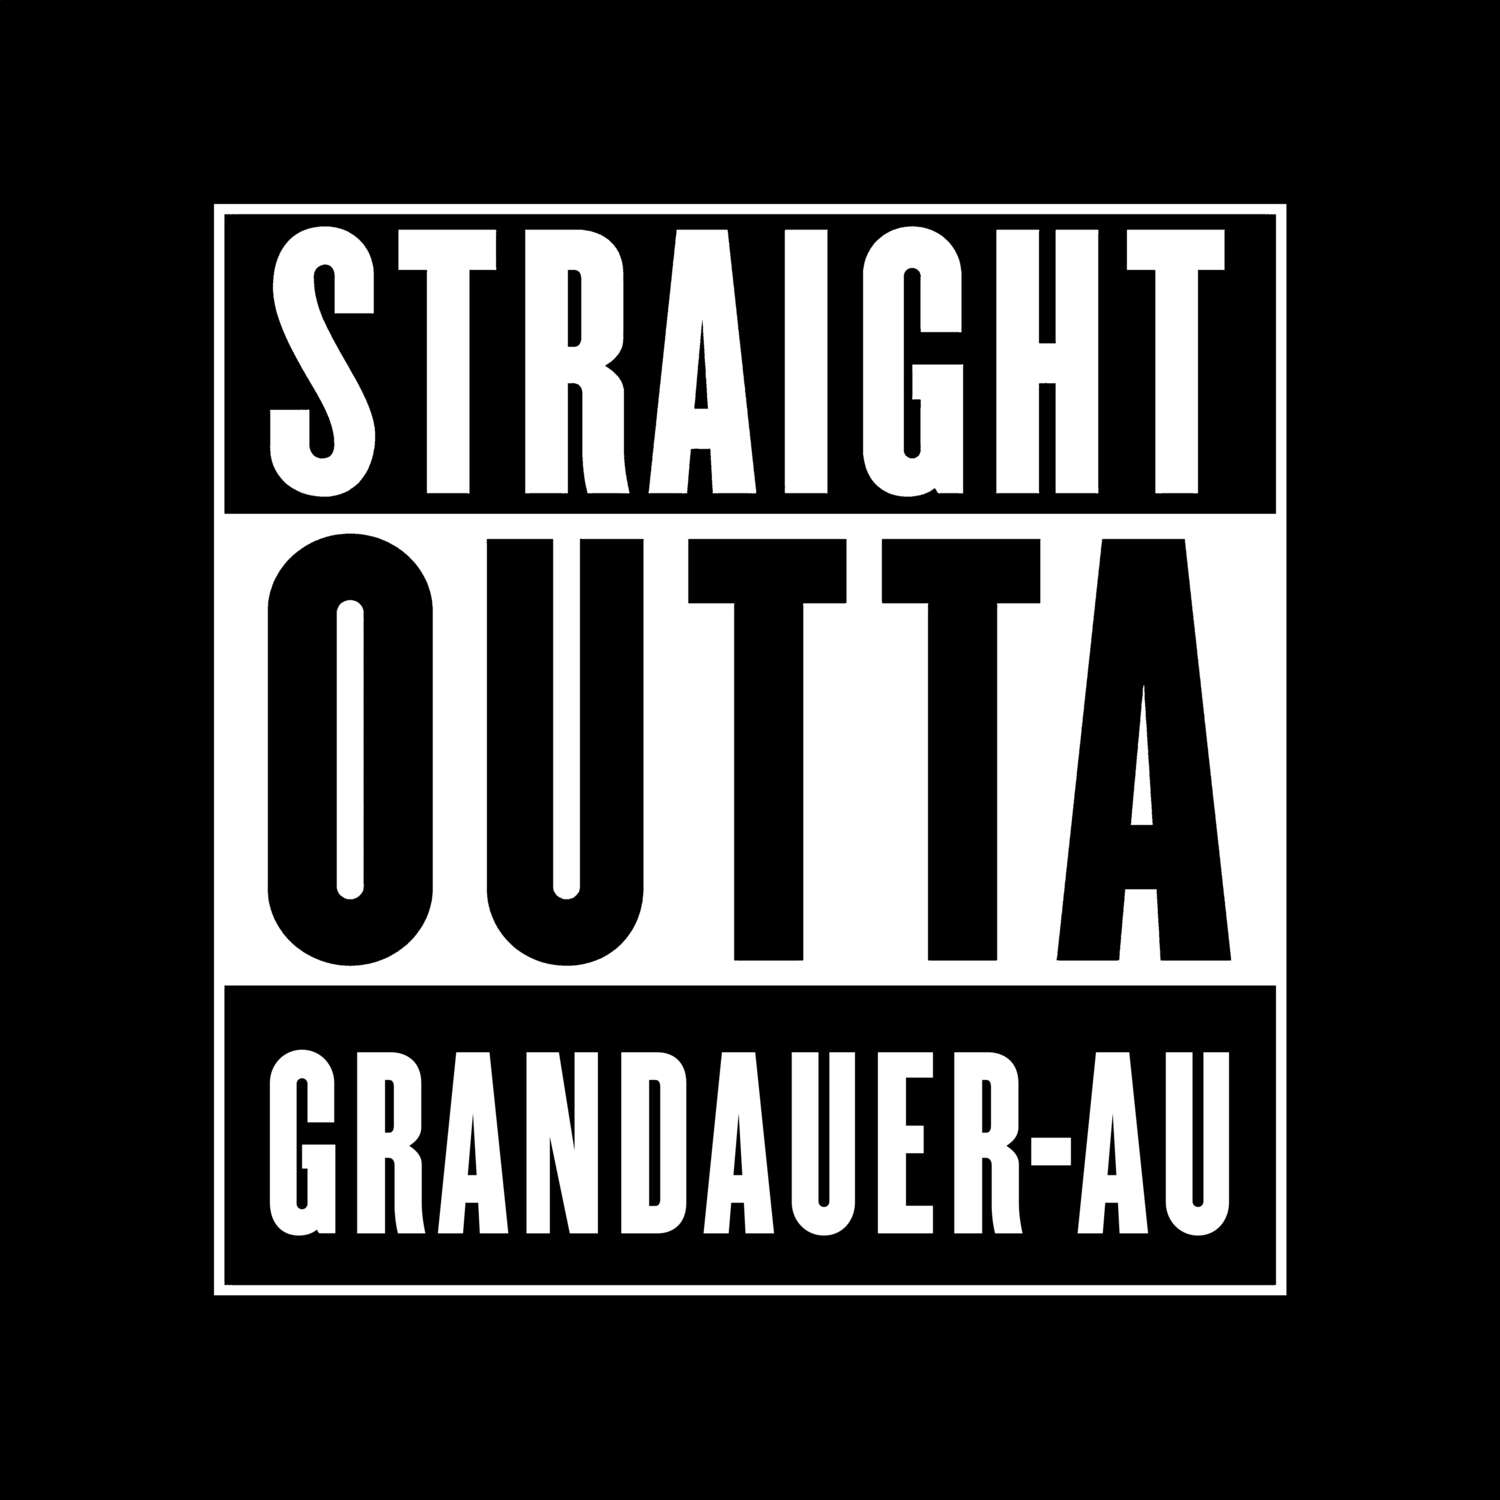 Grandauer-Au T-Shirt »Straight Outta«